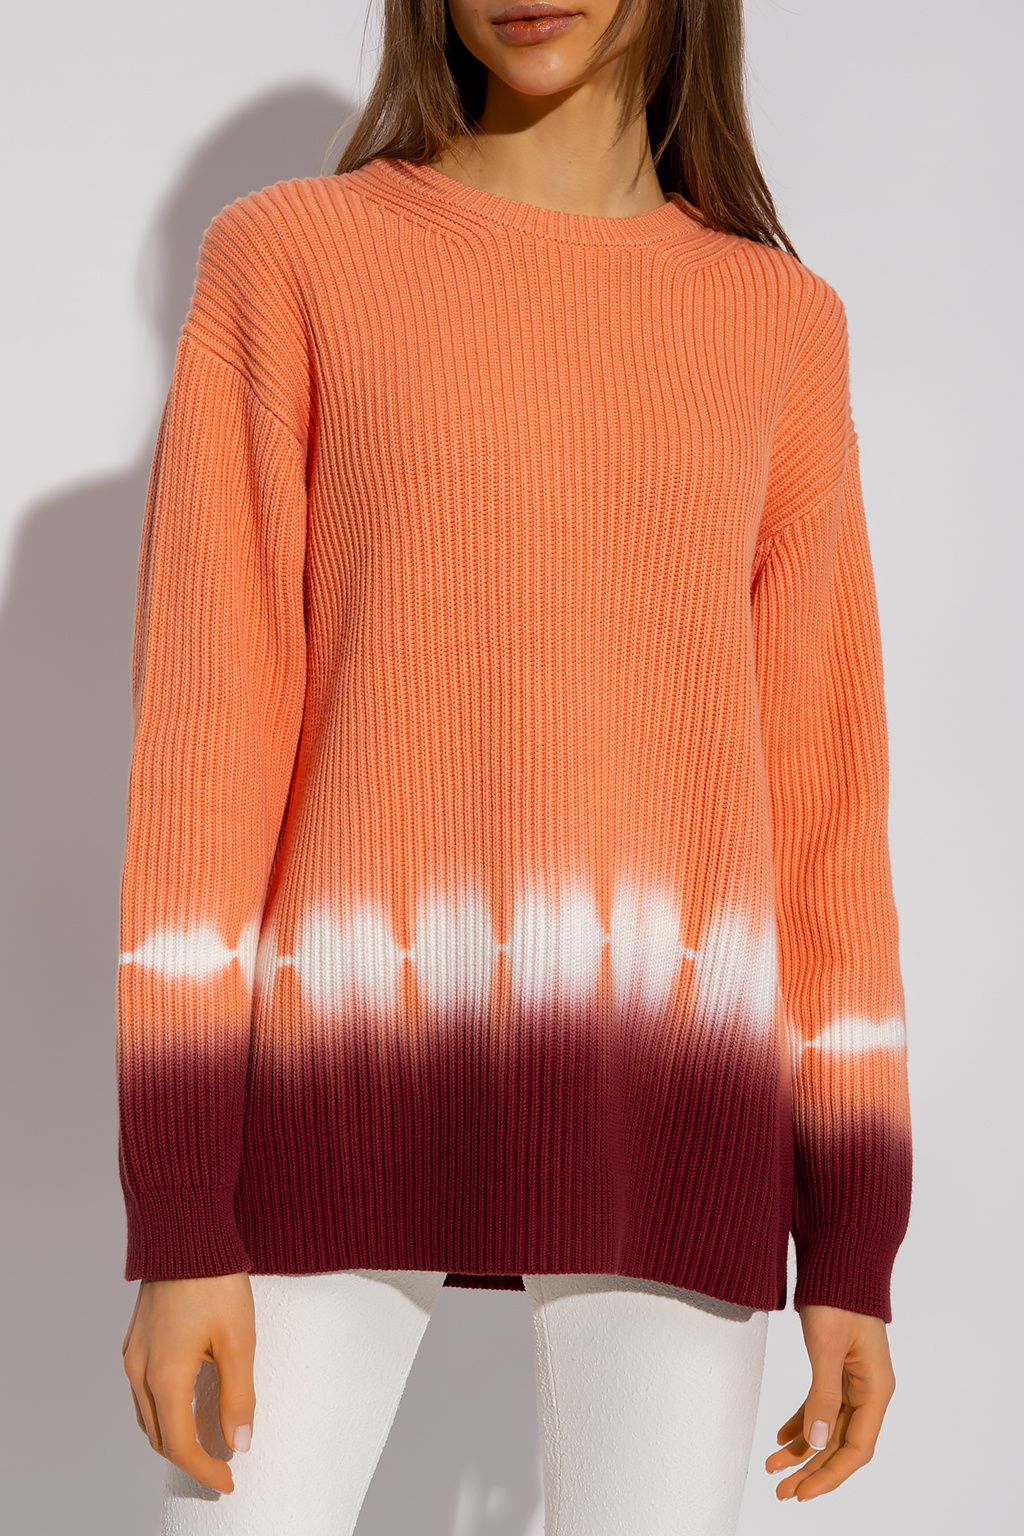 proenza wrap Schouler White Label Rib-knit sweater